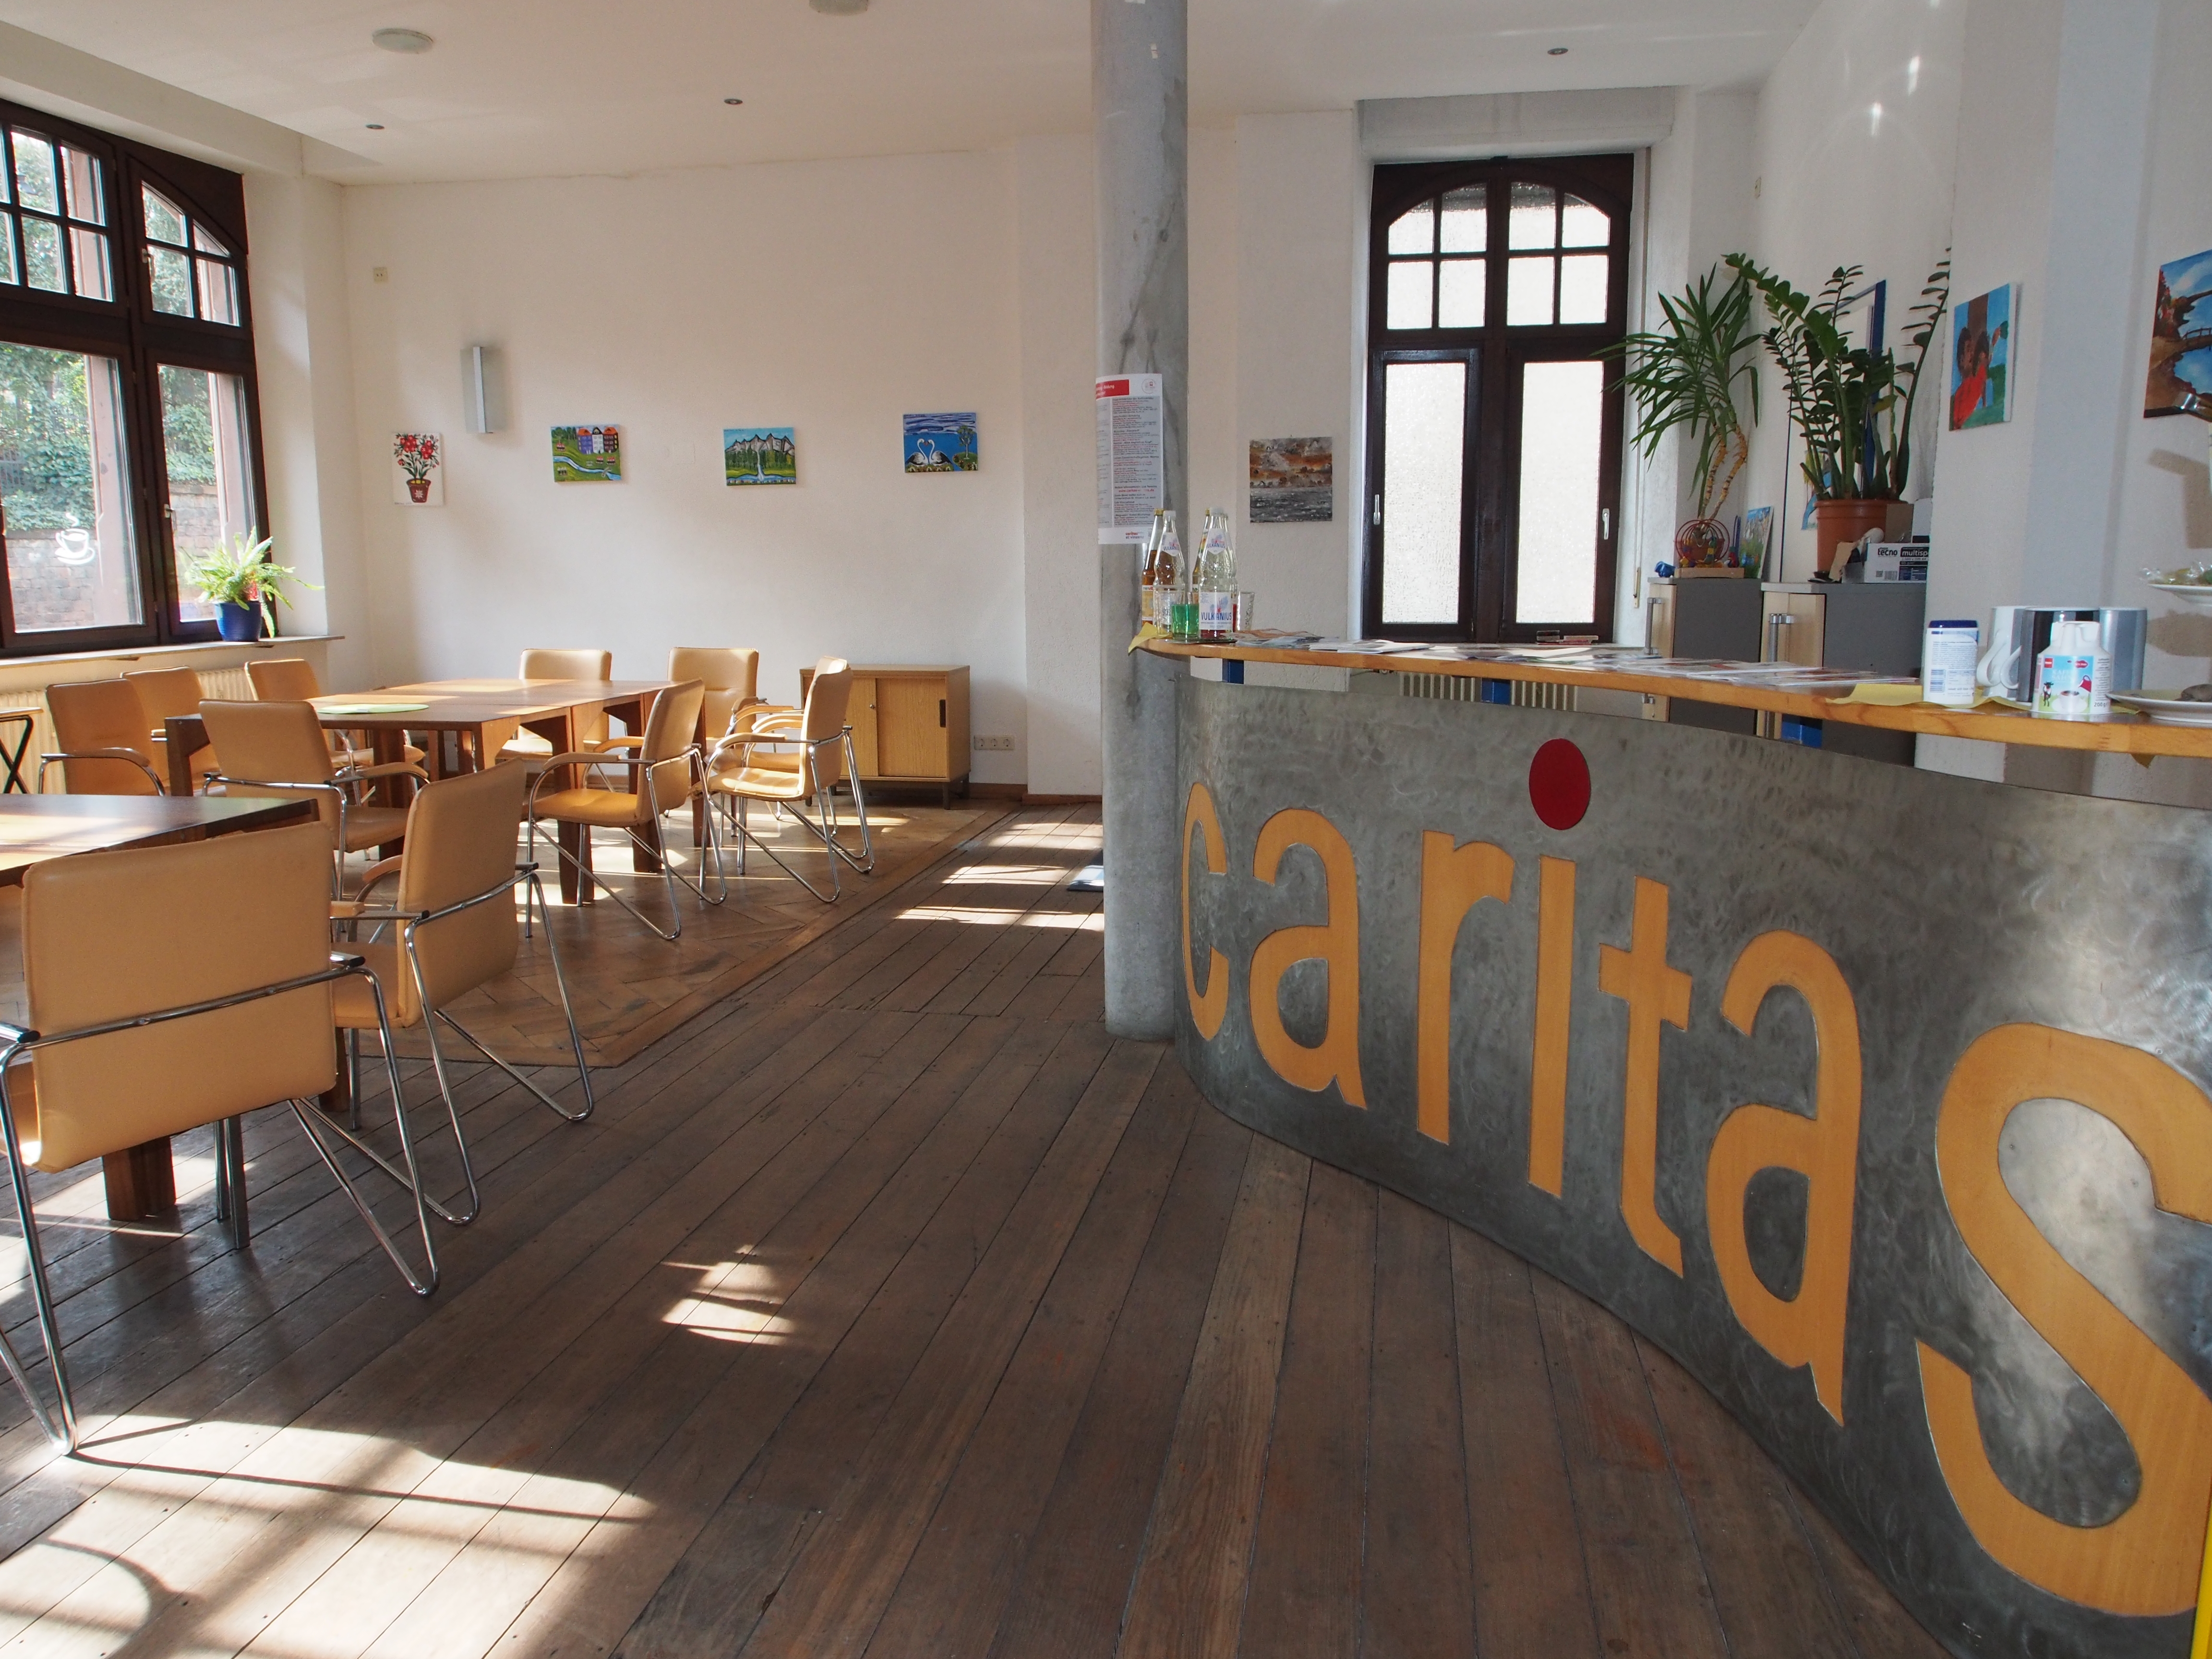 Info-Café CaritasCentrum St. Vinzenz im Erdgeschoss